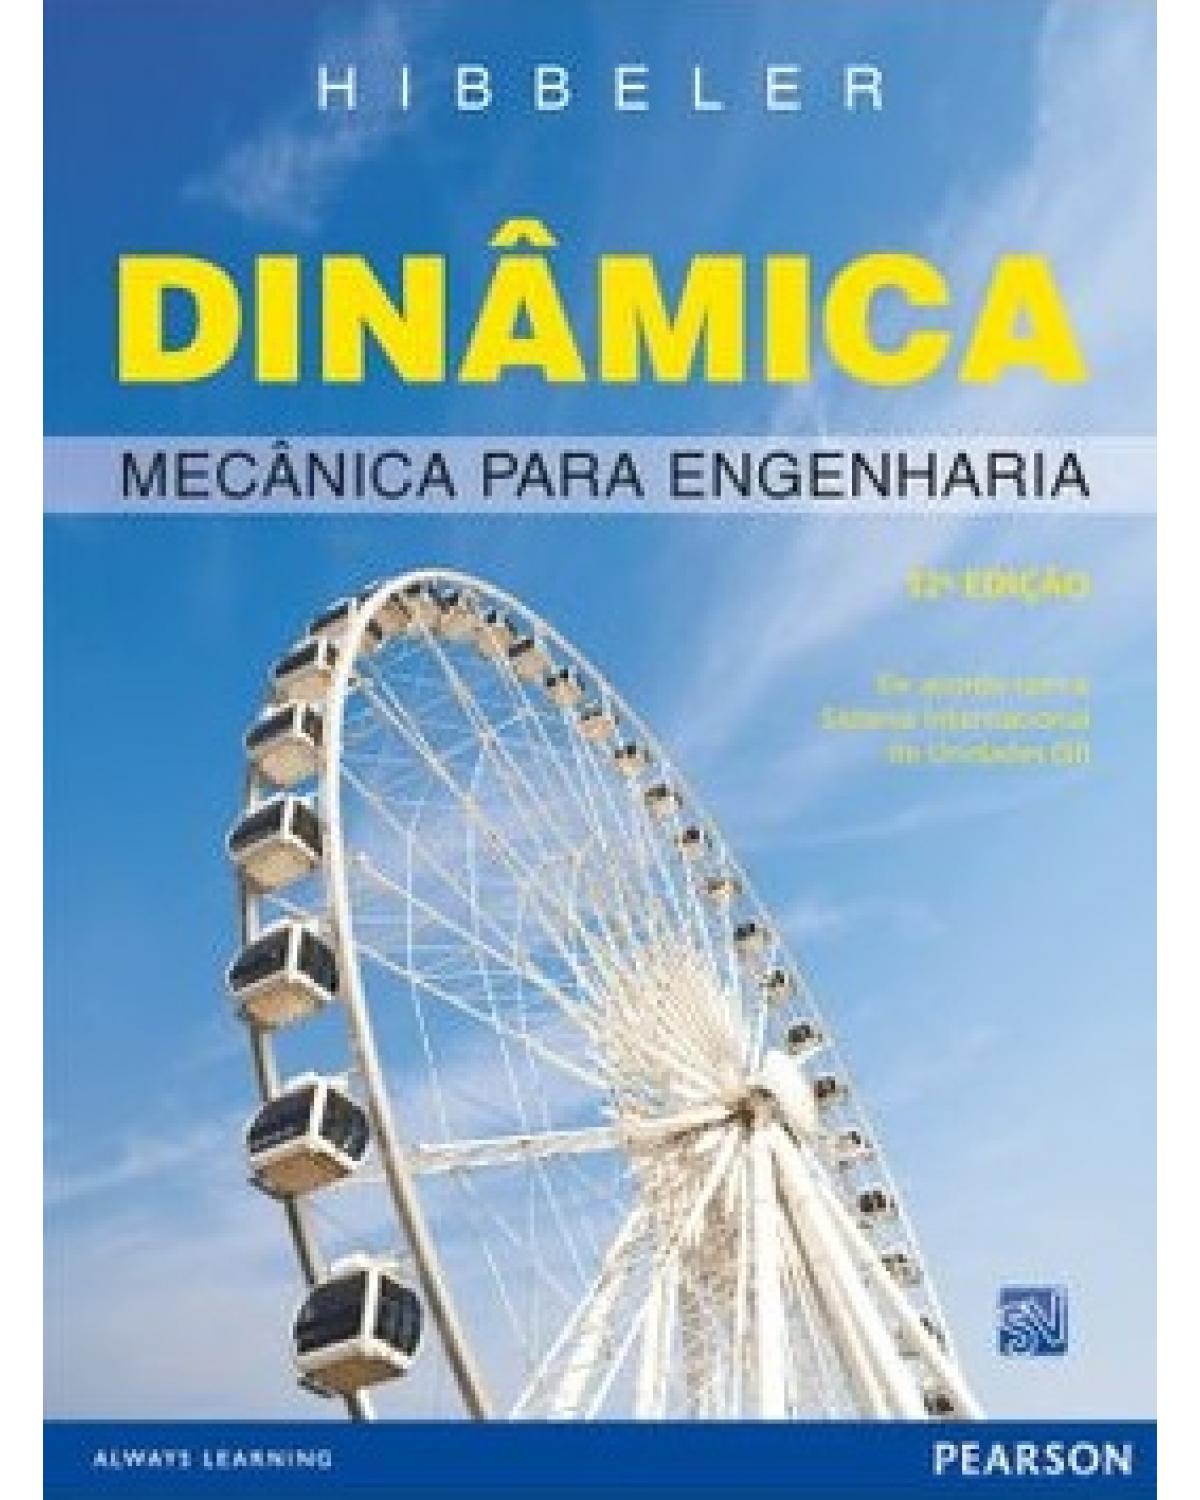 Dinâmica - Mecânica para engenharia - 12ª Edição | 2010